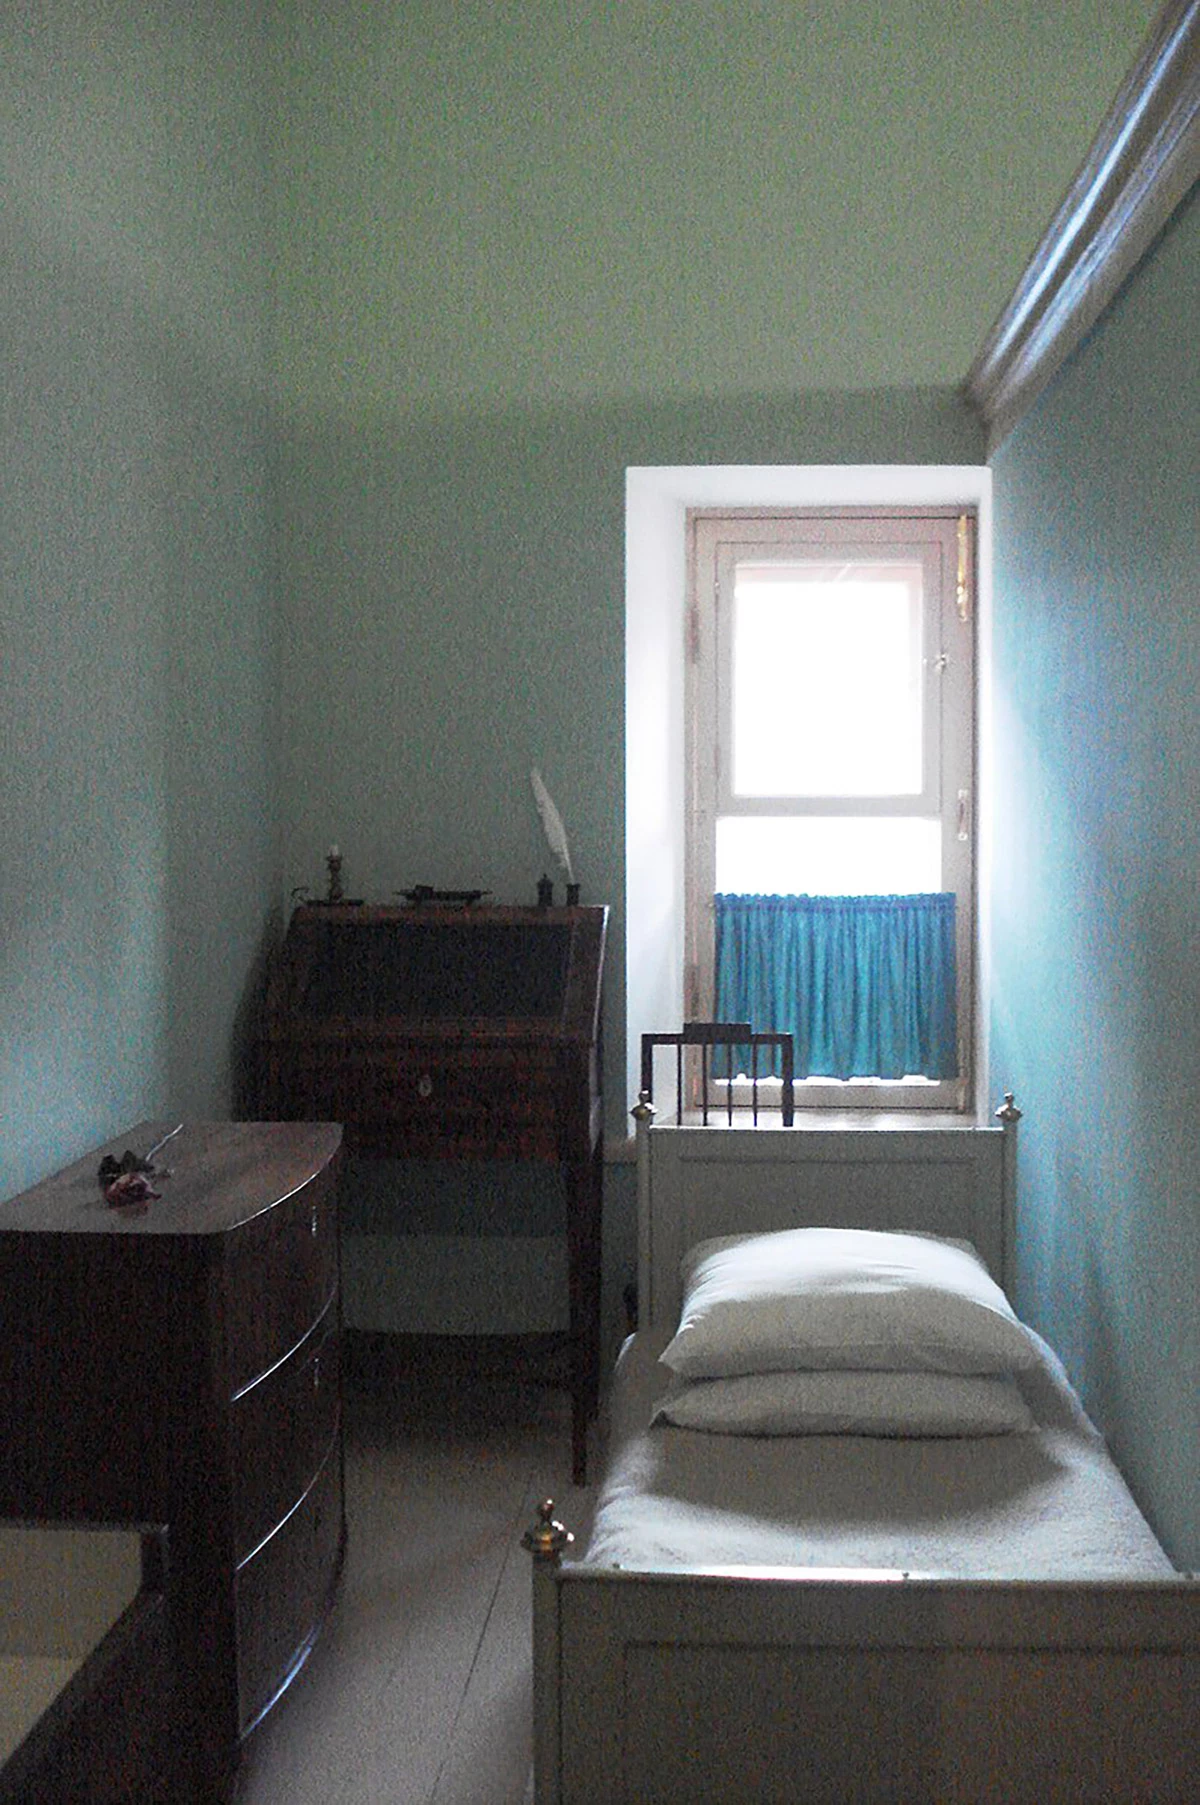 <p>Комната&nbsp;в Царскосельском лицее, в которой жил Пушкин</p>

<p></p>